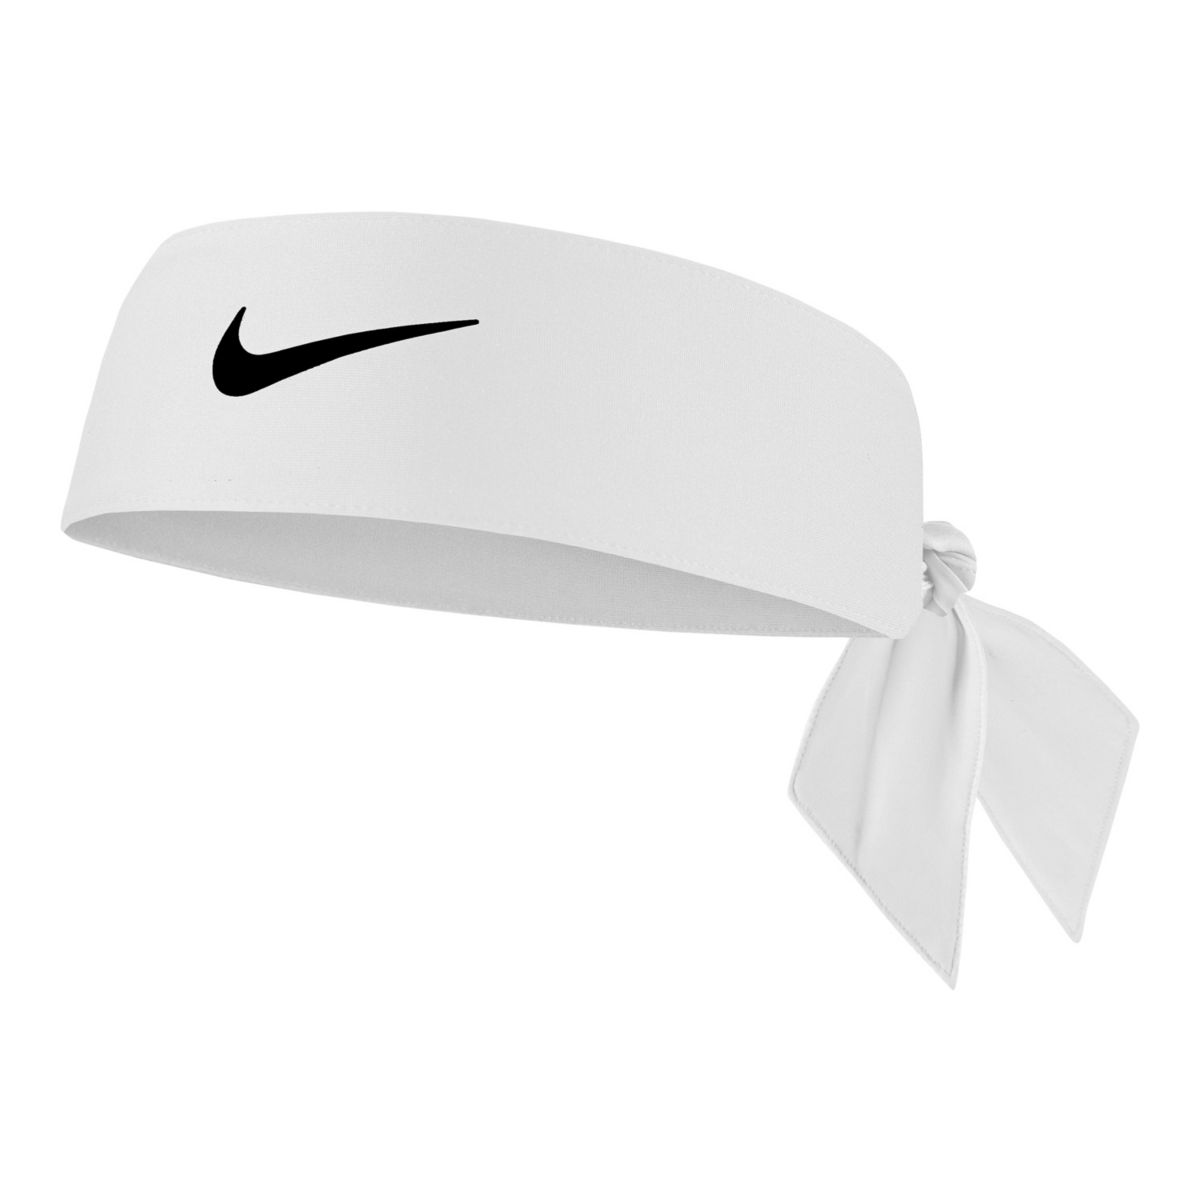 Женский головной убор Nike Dri-FIT 4.0 Nike